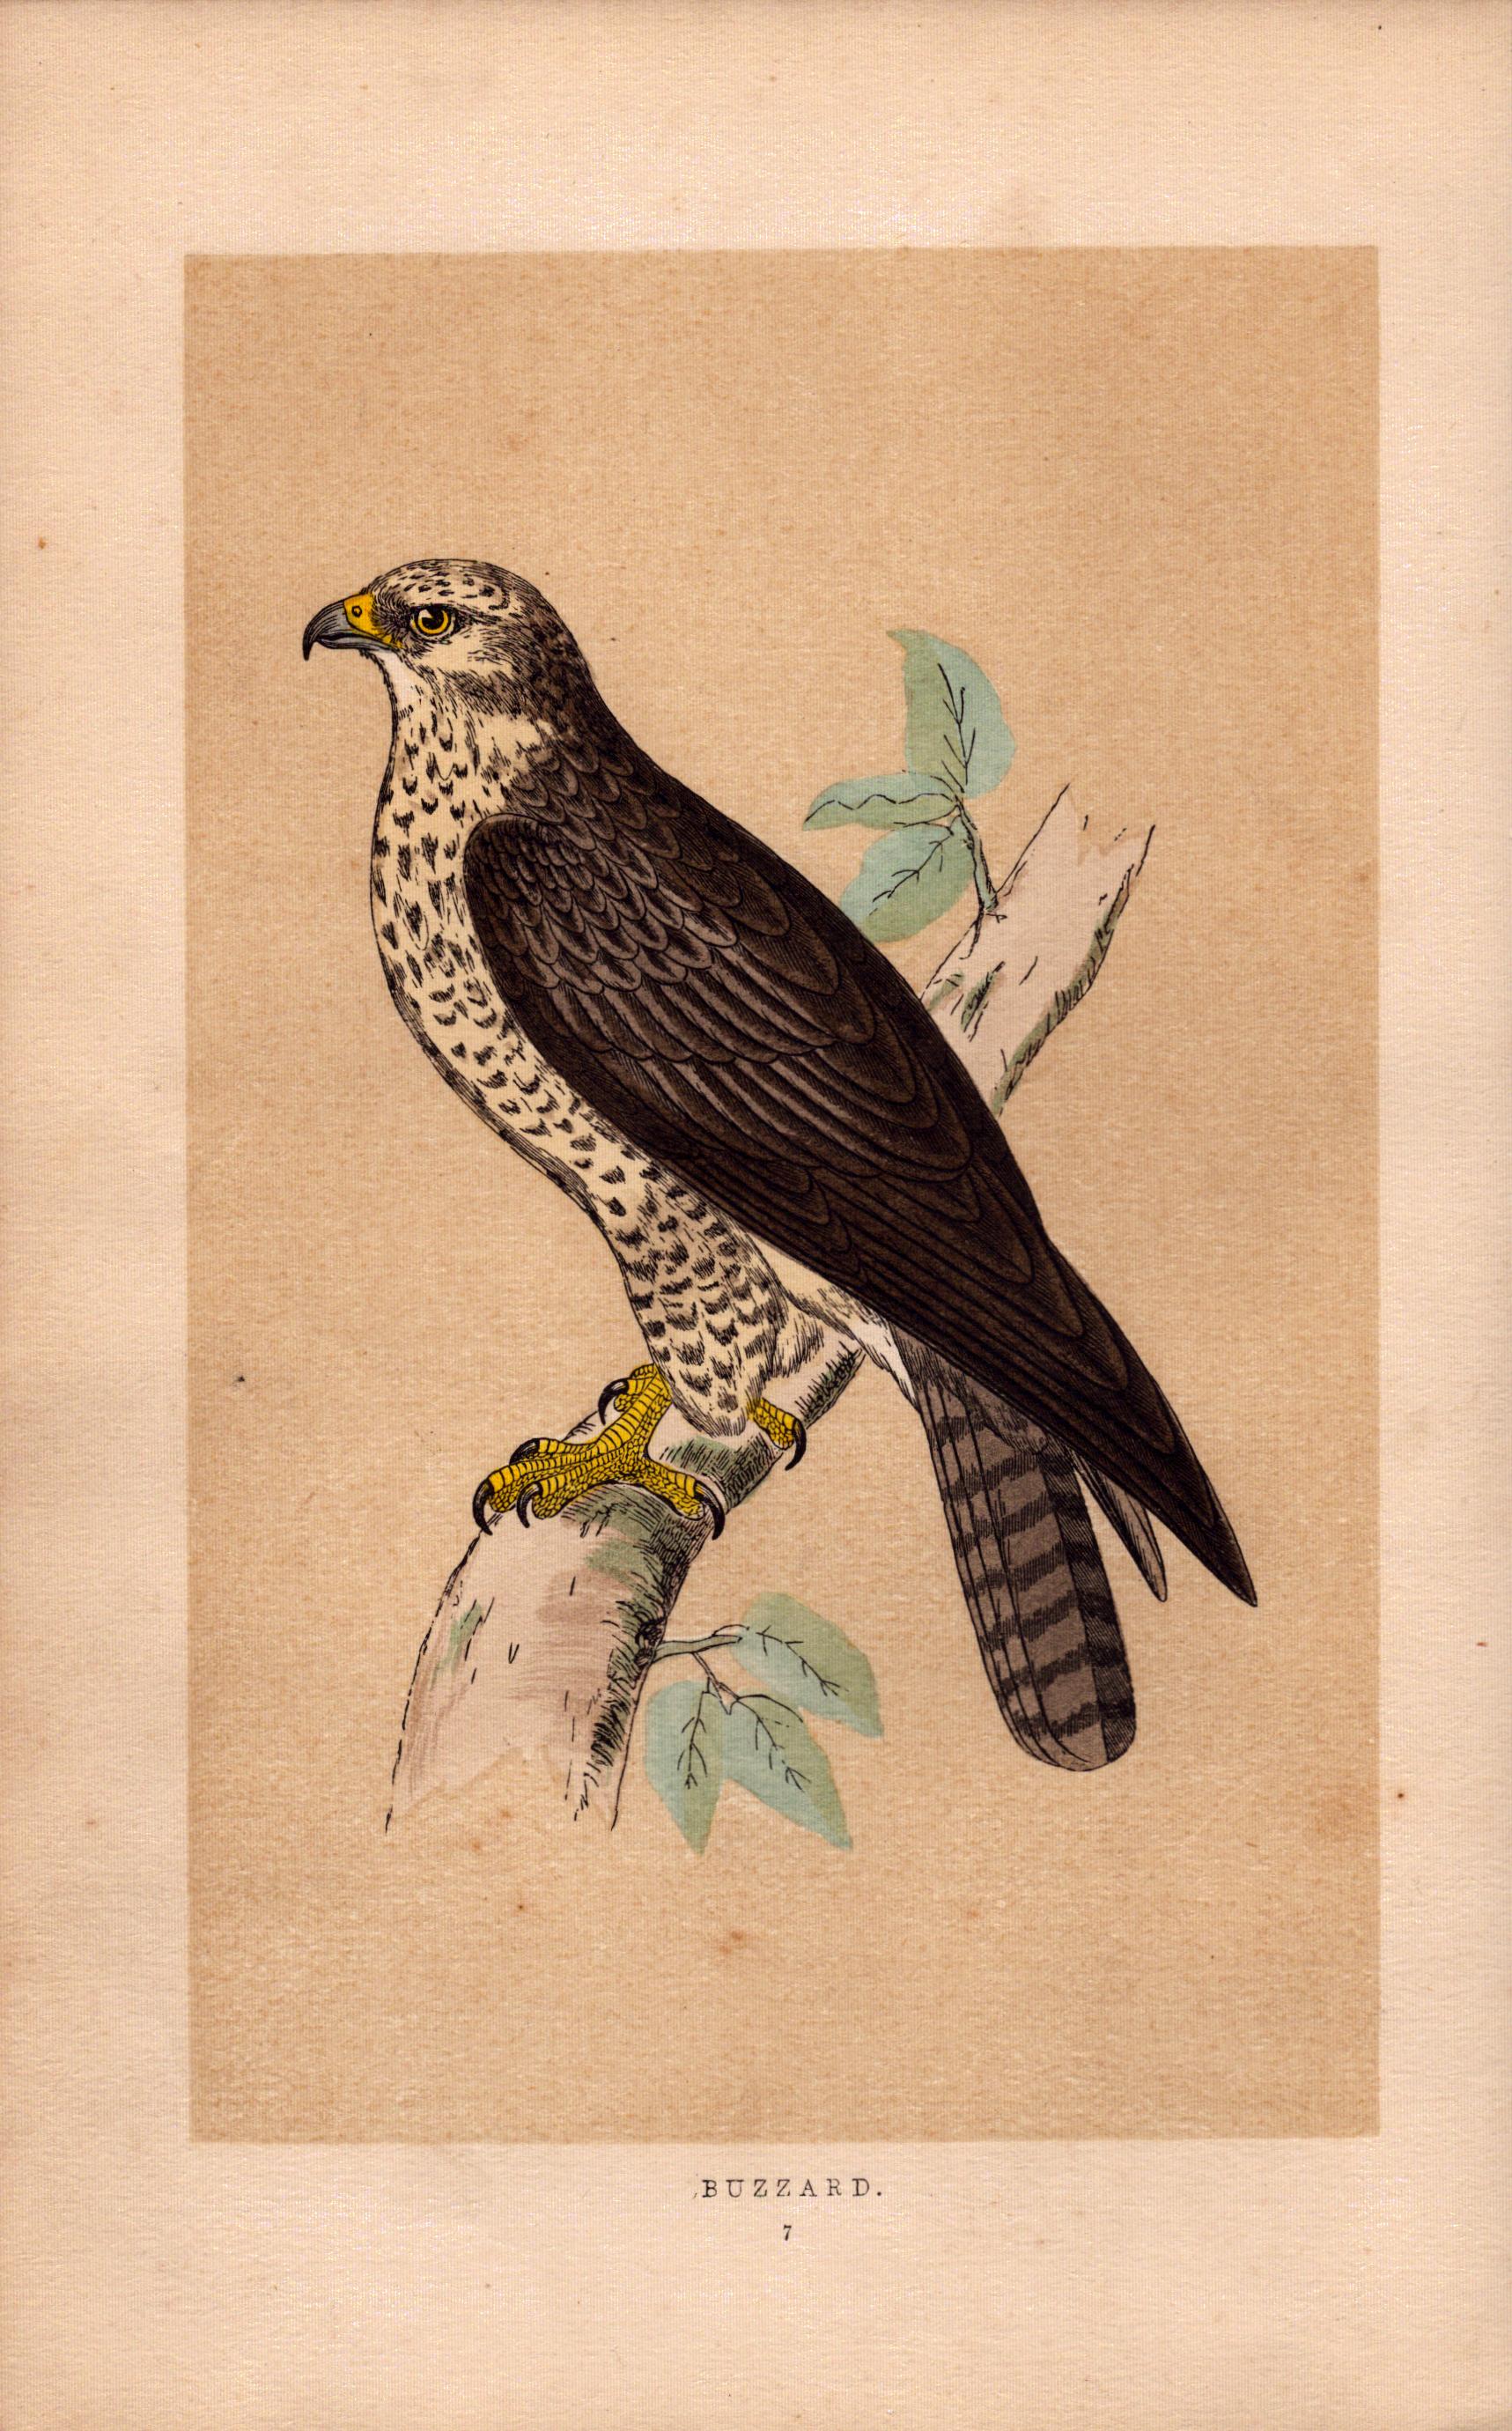 Buzzard Rev Morris Antique History of British Birds Engraving.